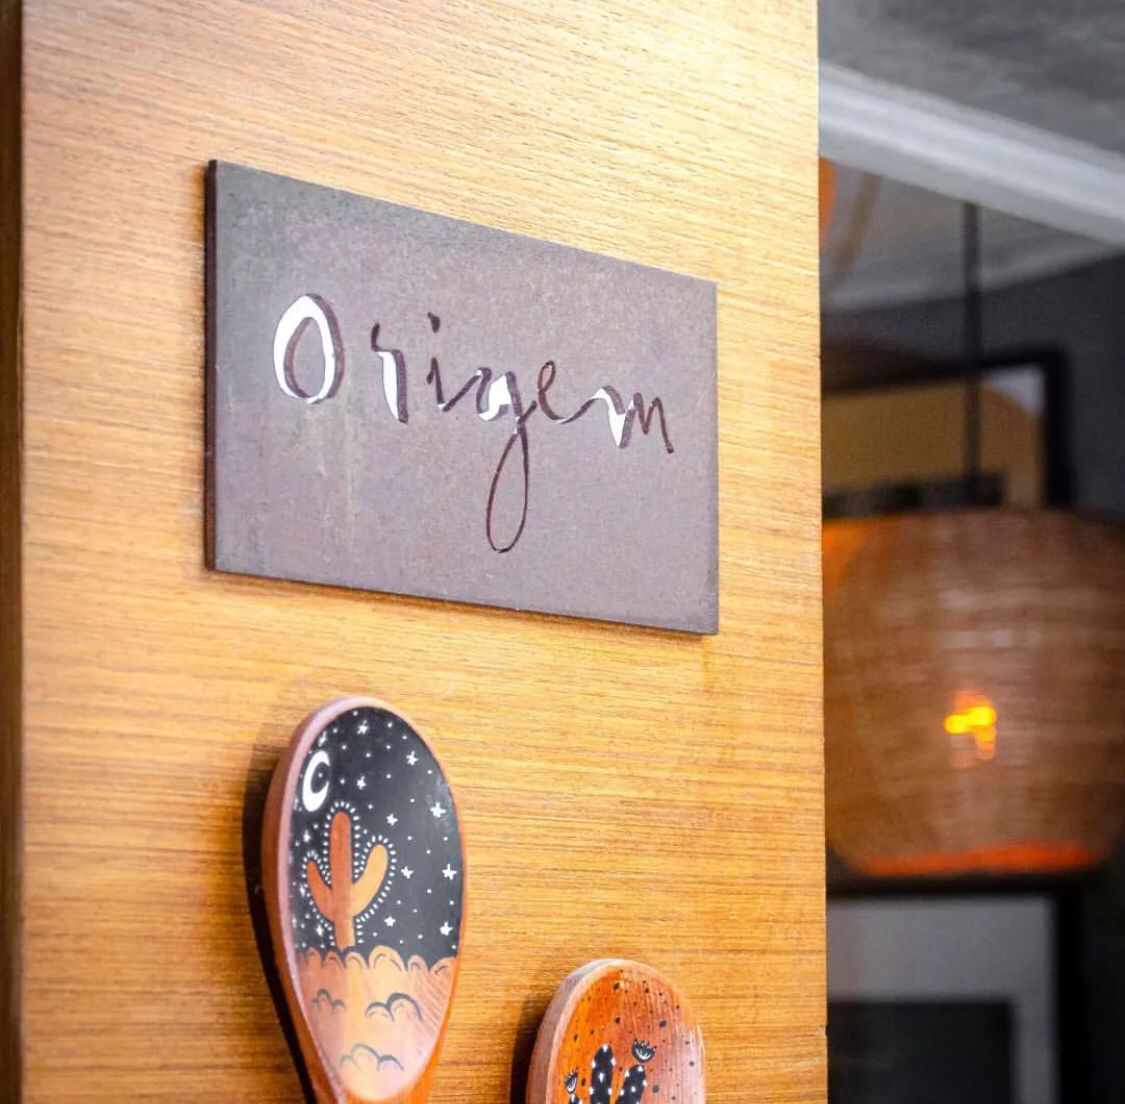 Grupo Origem expande operação em Salvador com abertura de restaurante italiano e laboratório criativo